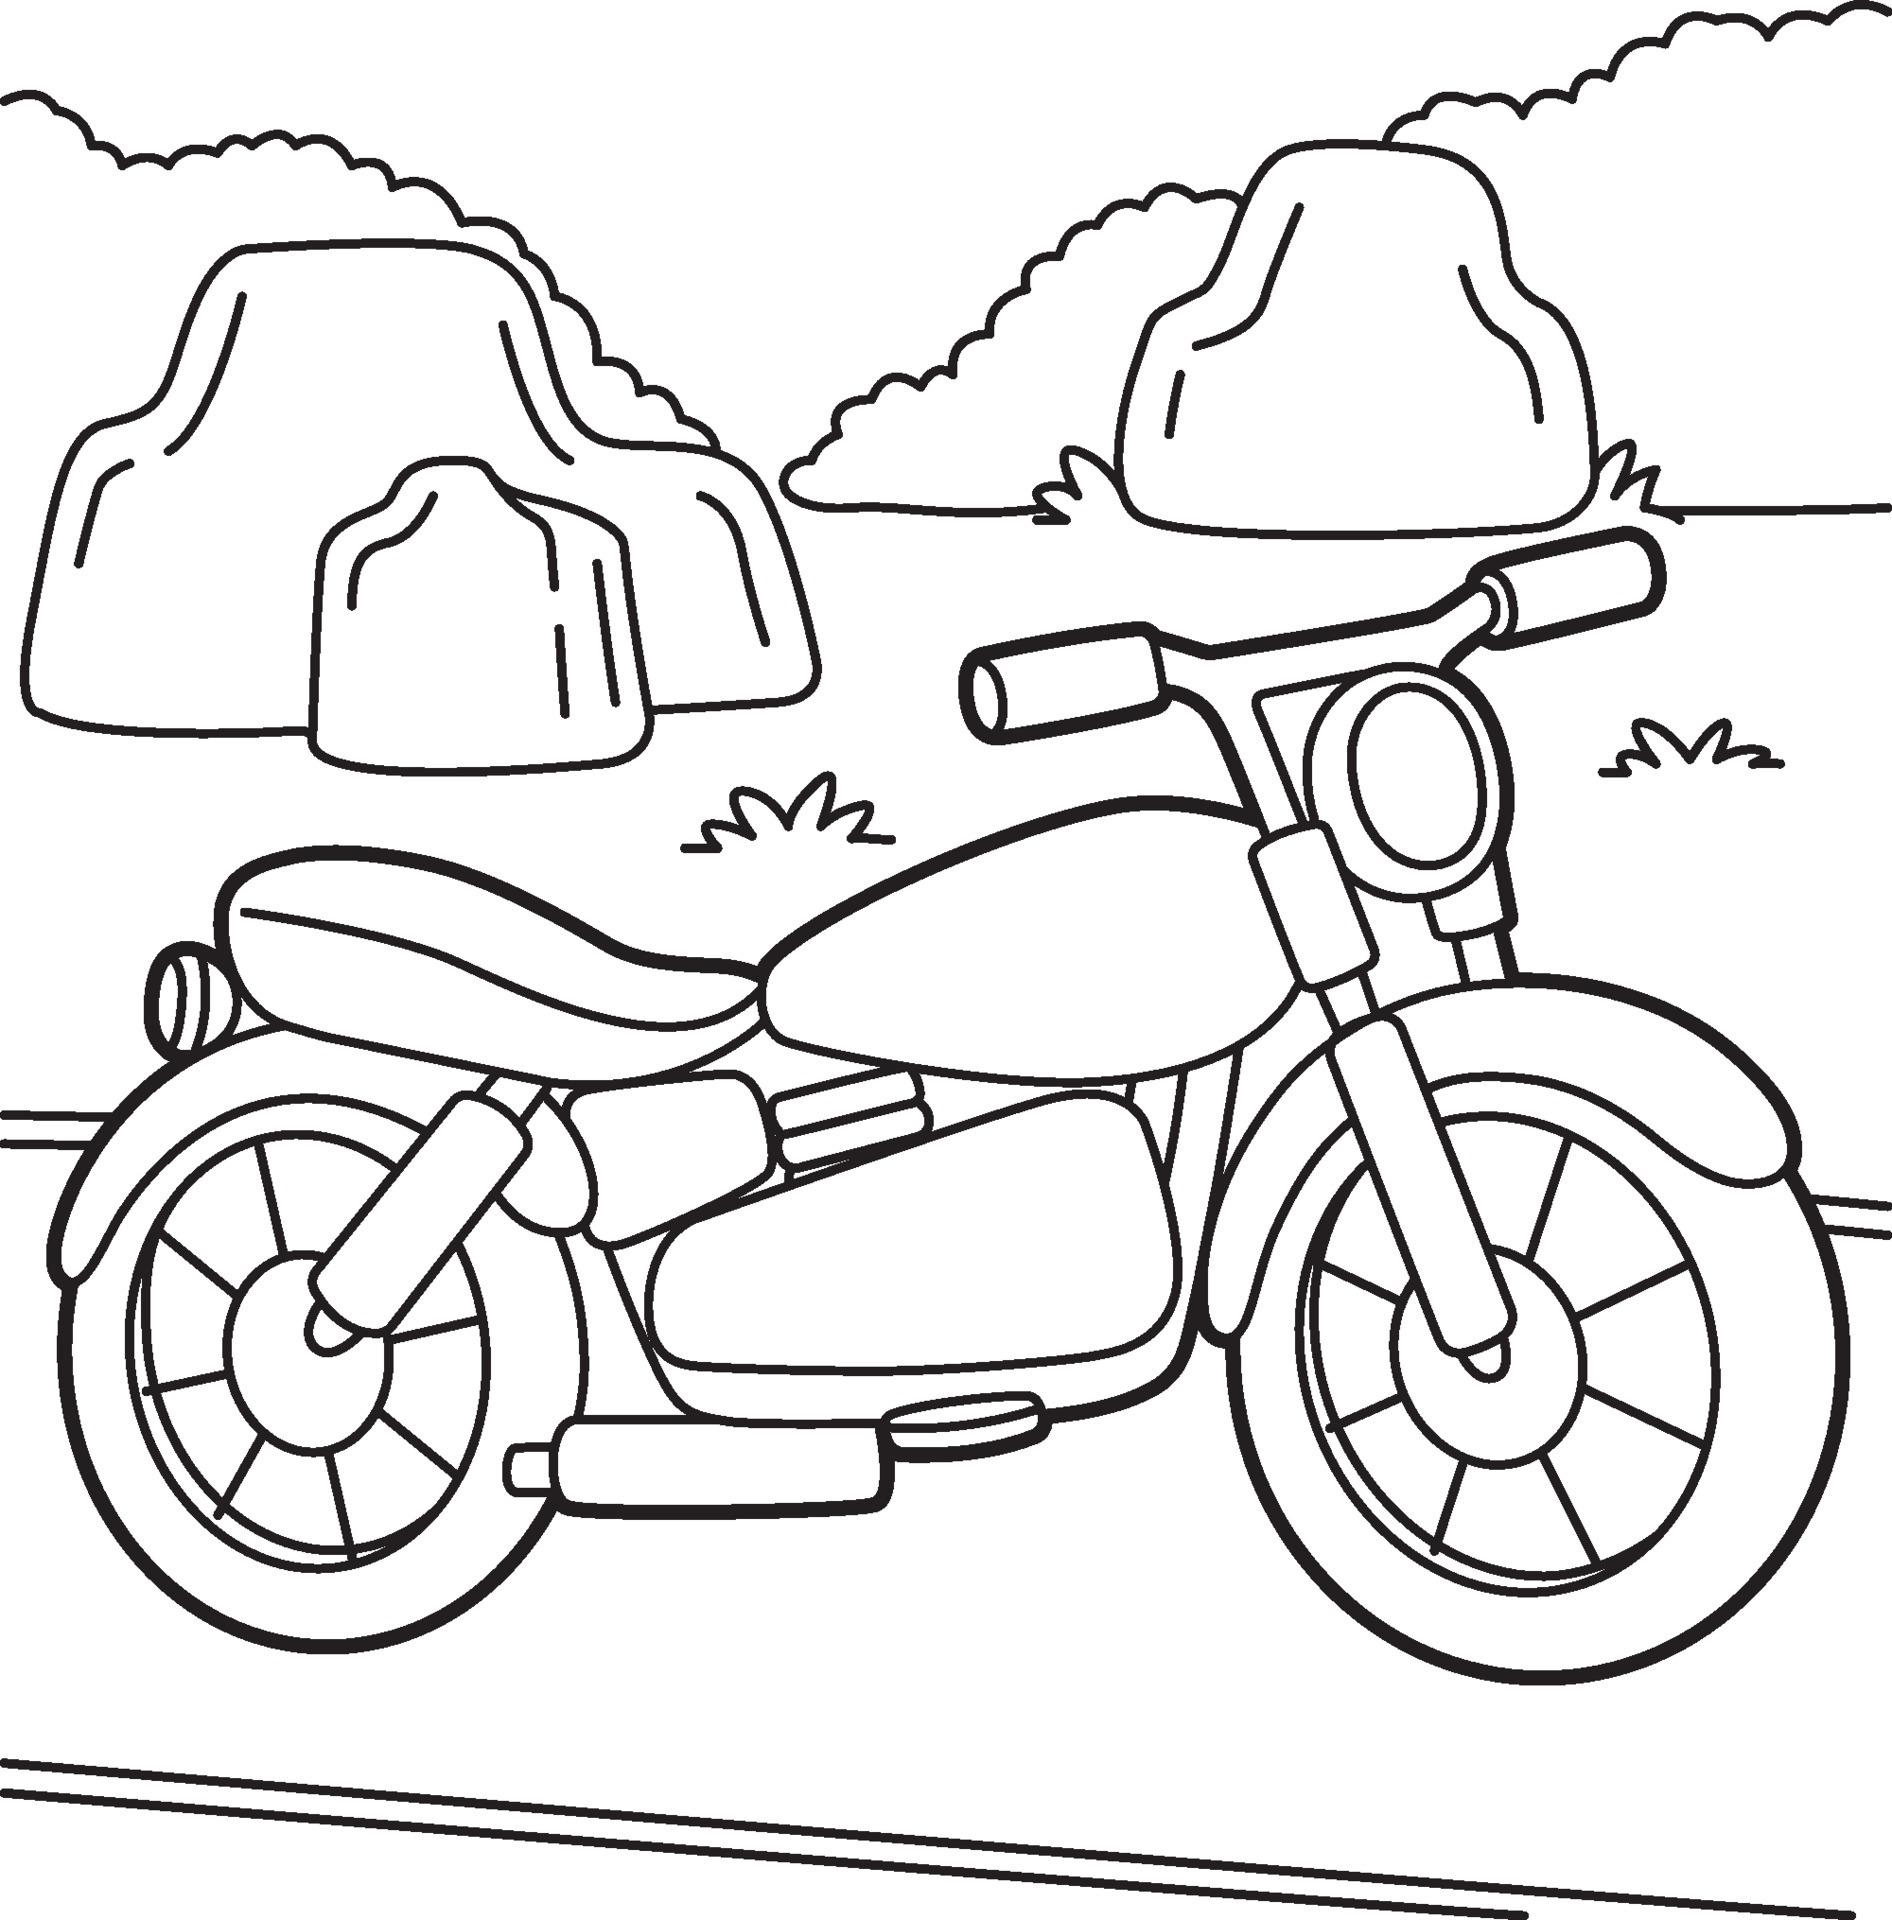 desenho de moto para crianças 5234616 Vetor no Vecteezy